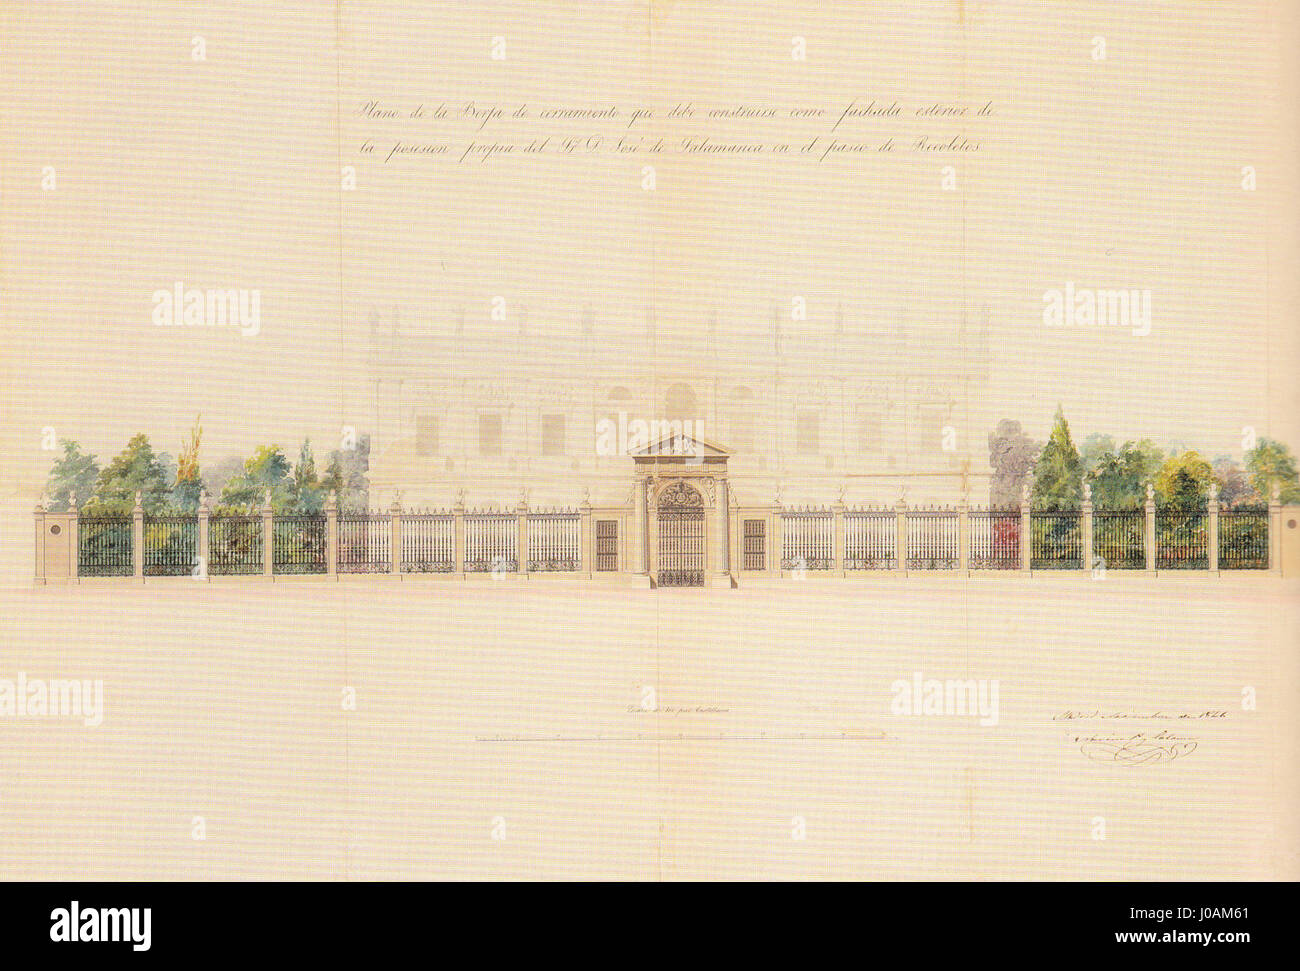 Verja del Palacio del Marqués de Salamanca - Narciso Pascual y Colomer - 1846 Banque D'Images